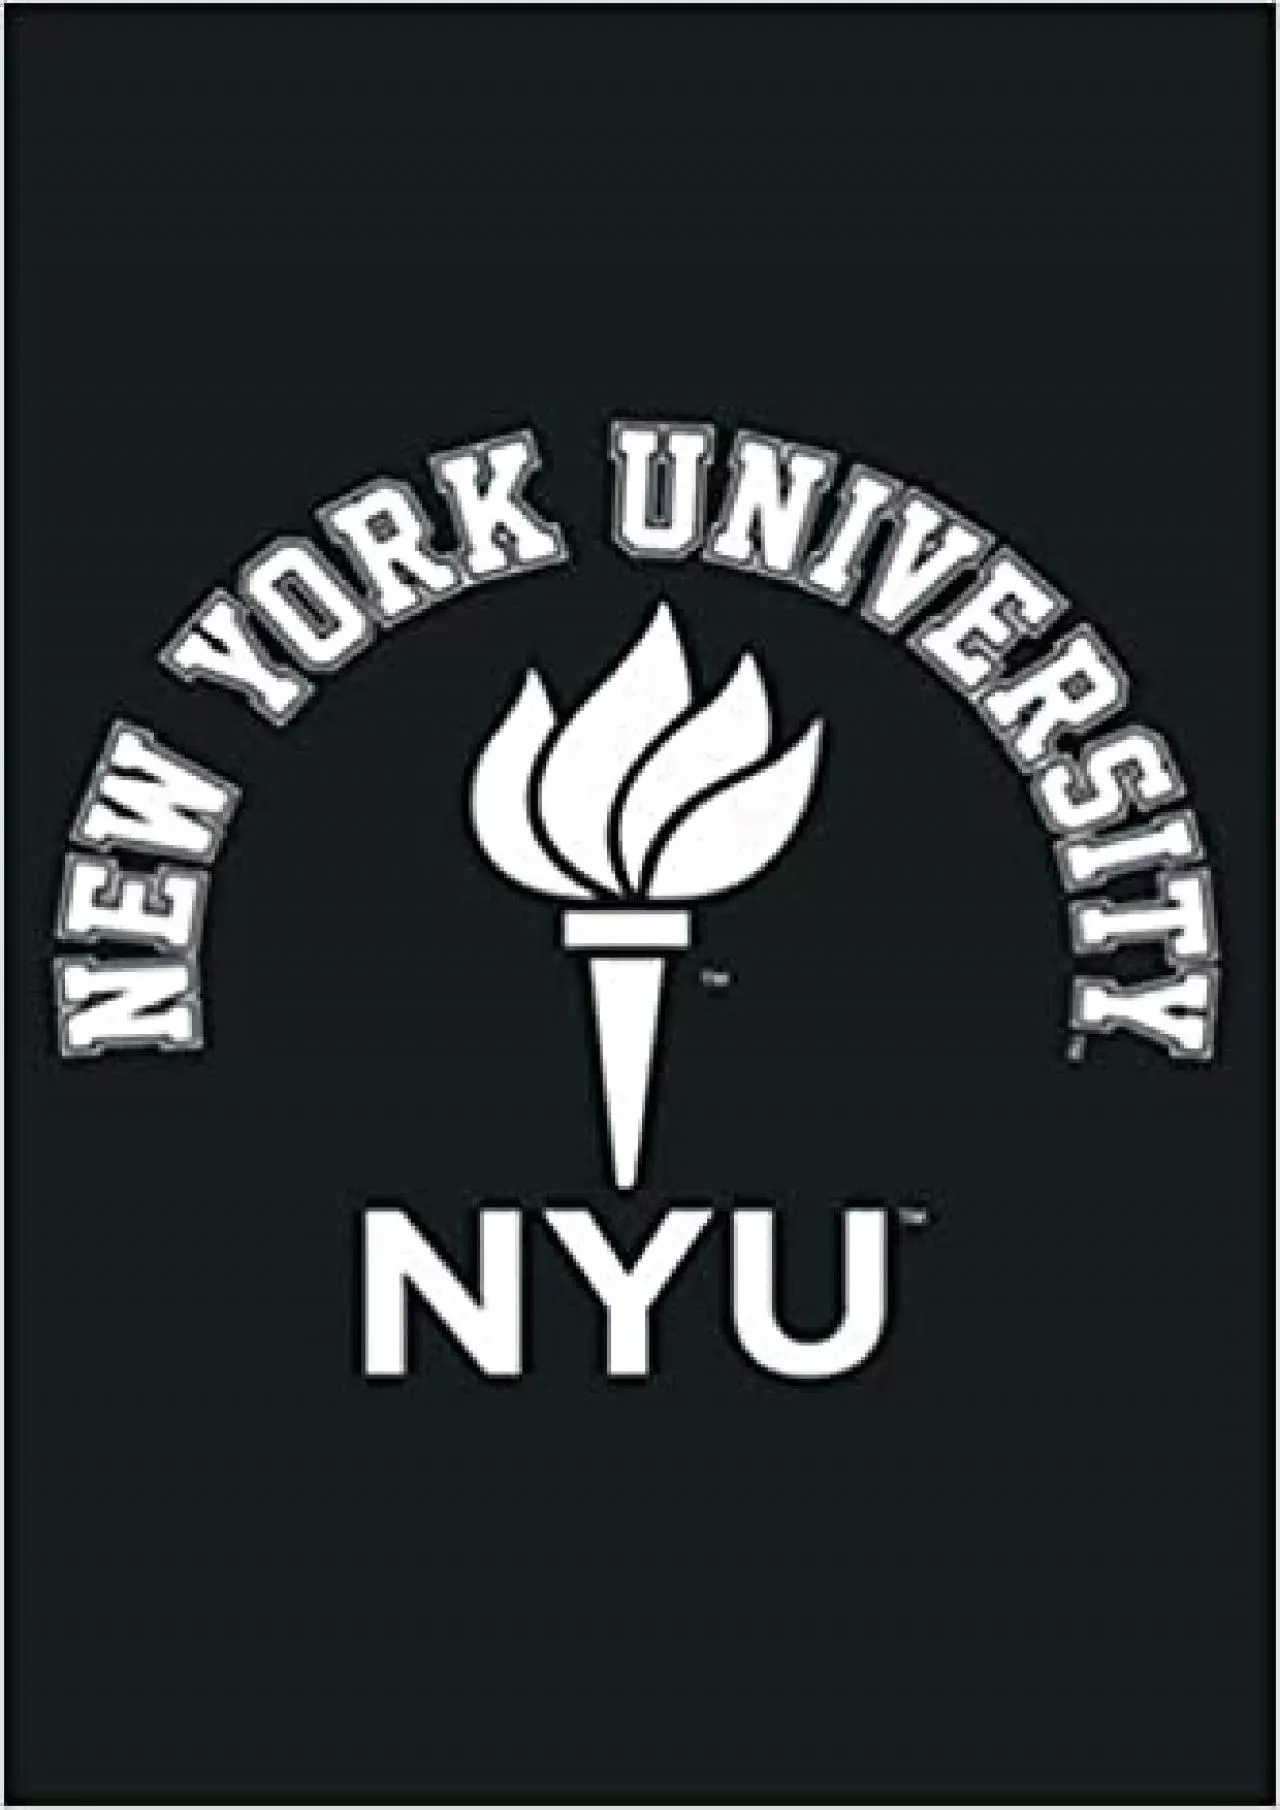 New York University NYU NCAA Sc60nyu: Notebook Planner - 6x9 inch Daily Planner Journal